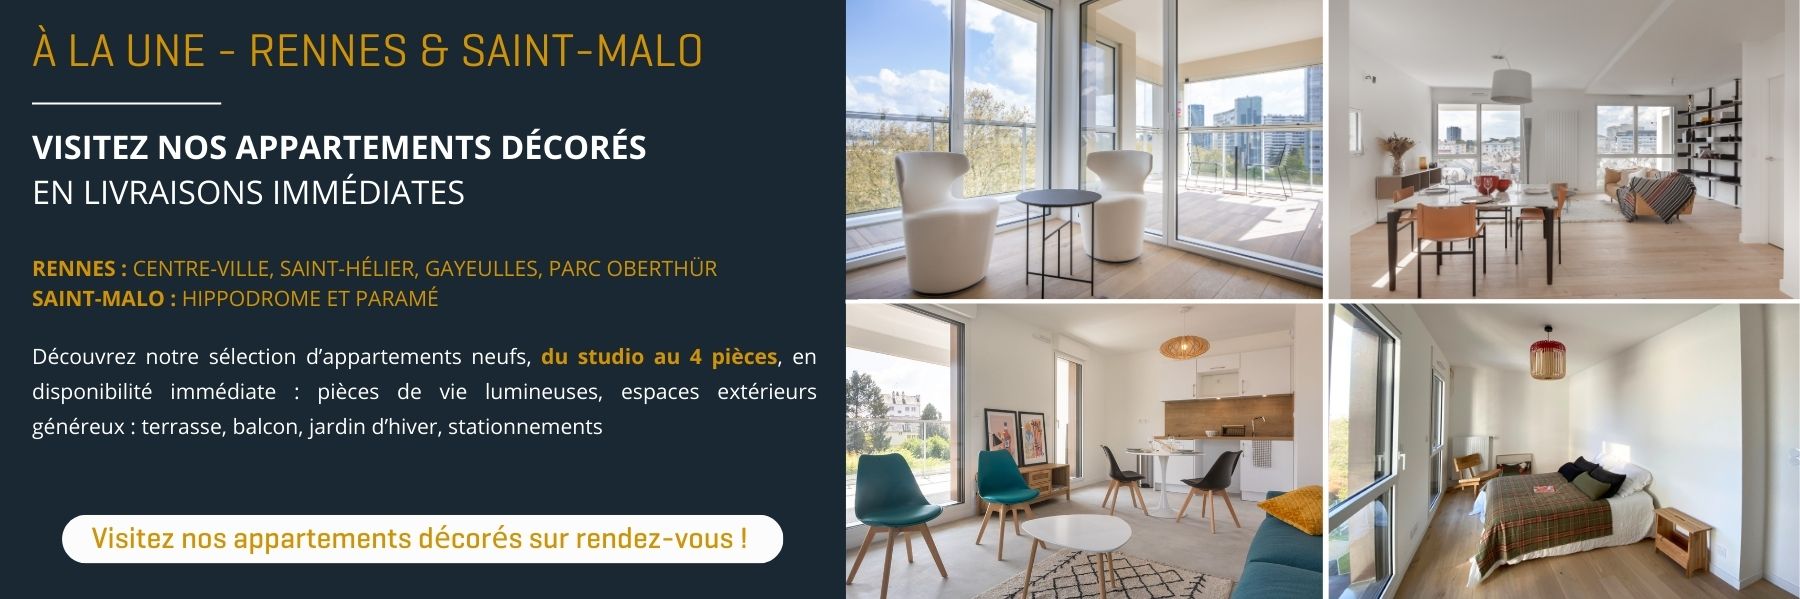 Appartements neufs en livraison immédiate à Rennes et Saint-Malo